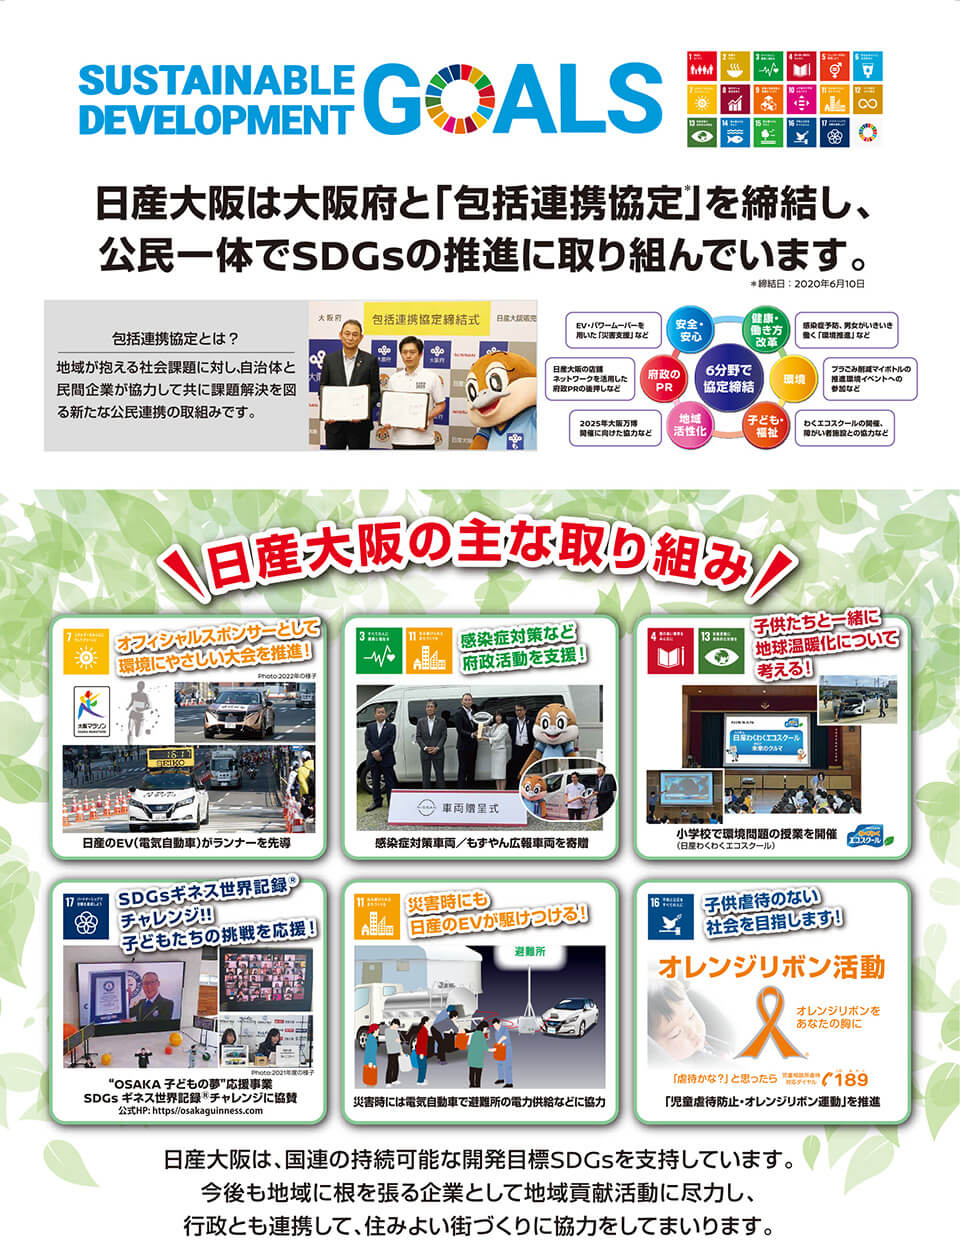 日産大阪は大阪府と連携・協働し、地域の活性化及び府民サービスの向上を図ります！